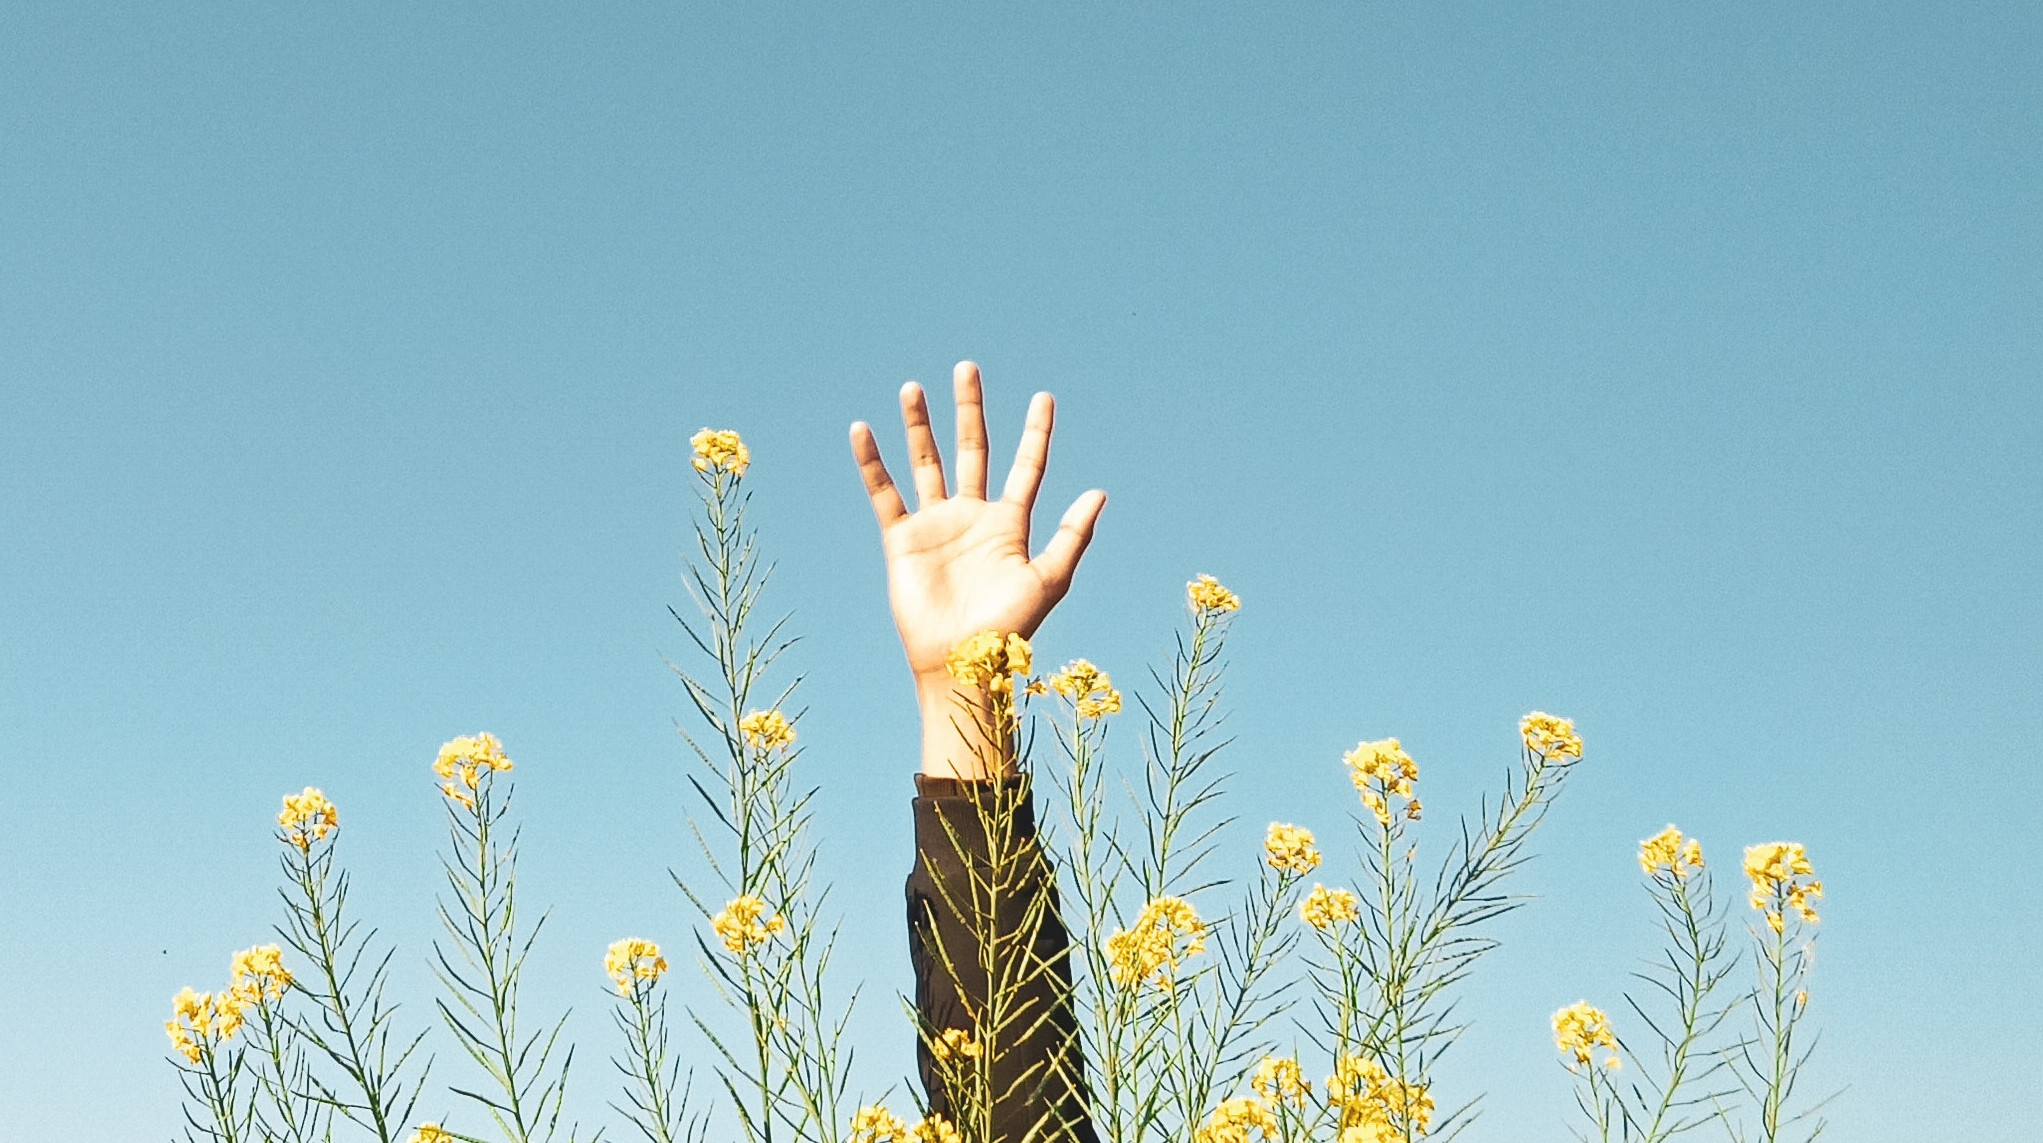 Dłoń pośród kwiatów pokazująca pięć palców